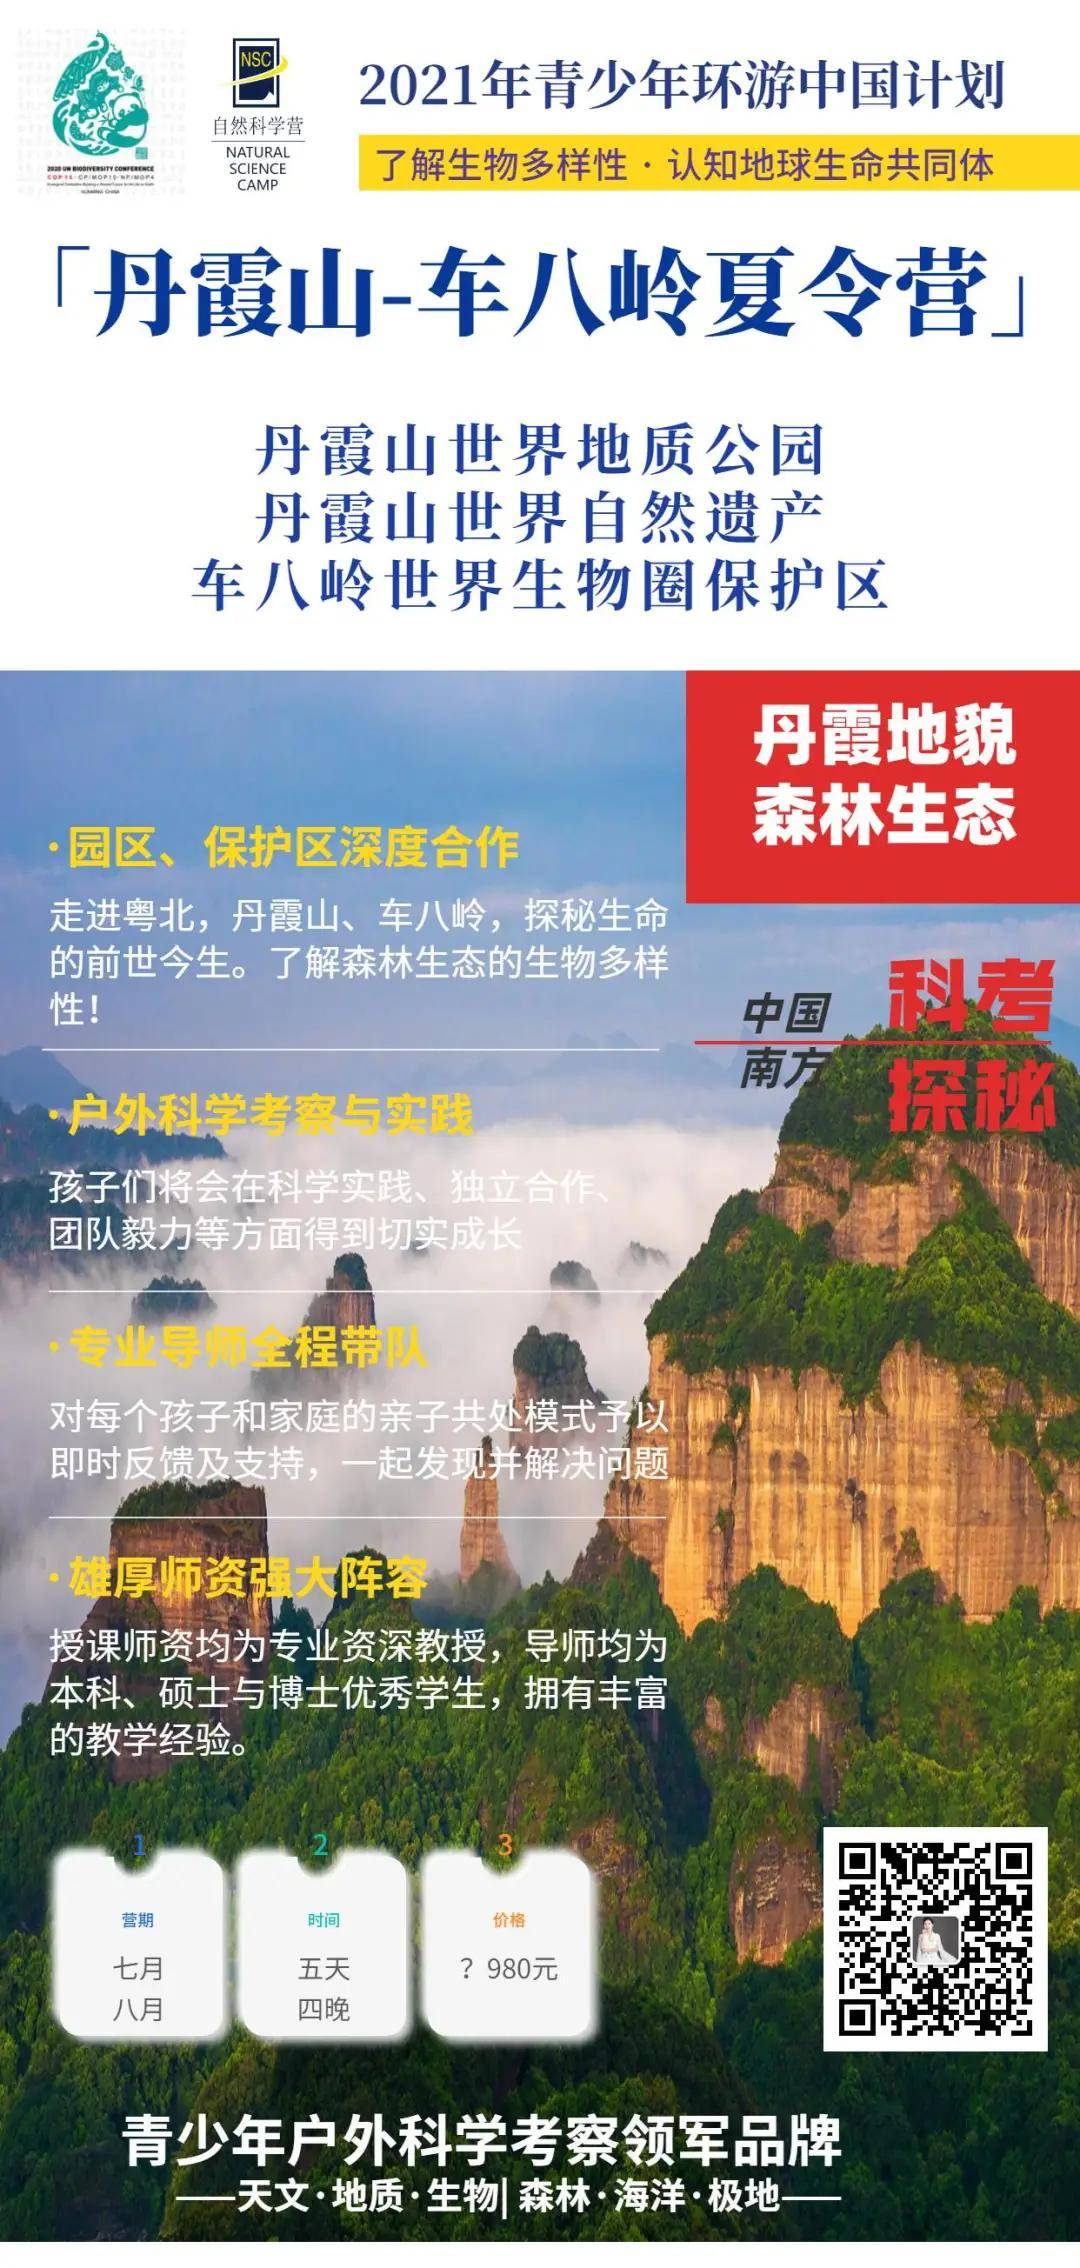 中国南部 | 丹霞山-车八岭夏令营，走进世界自然遗产地、世界生物圈保护区